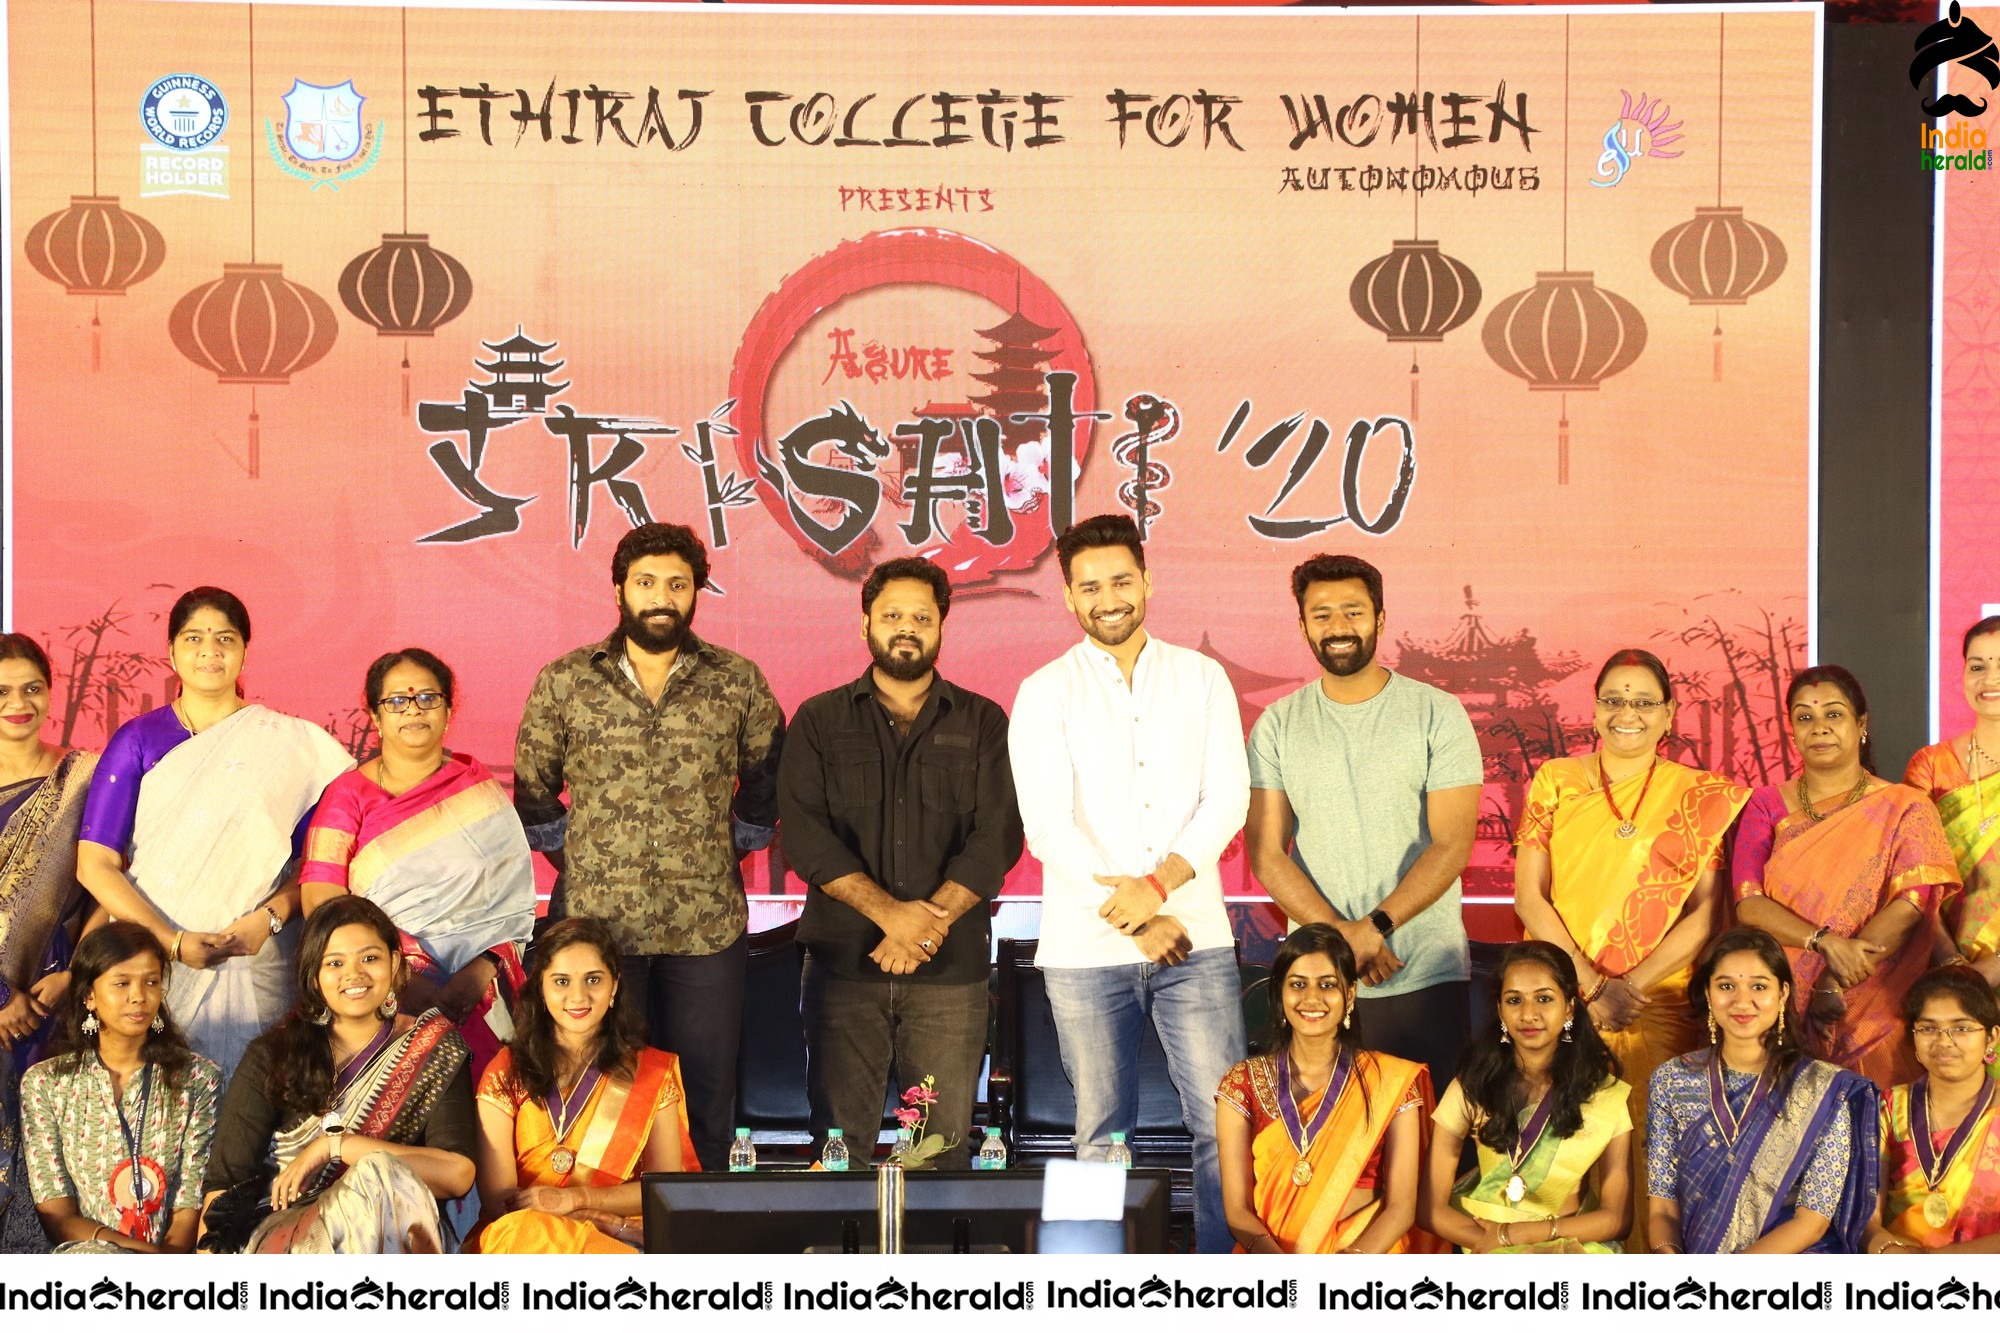 Vaanam kottatum team Photos with Ethiraj College students